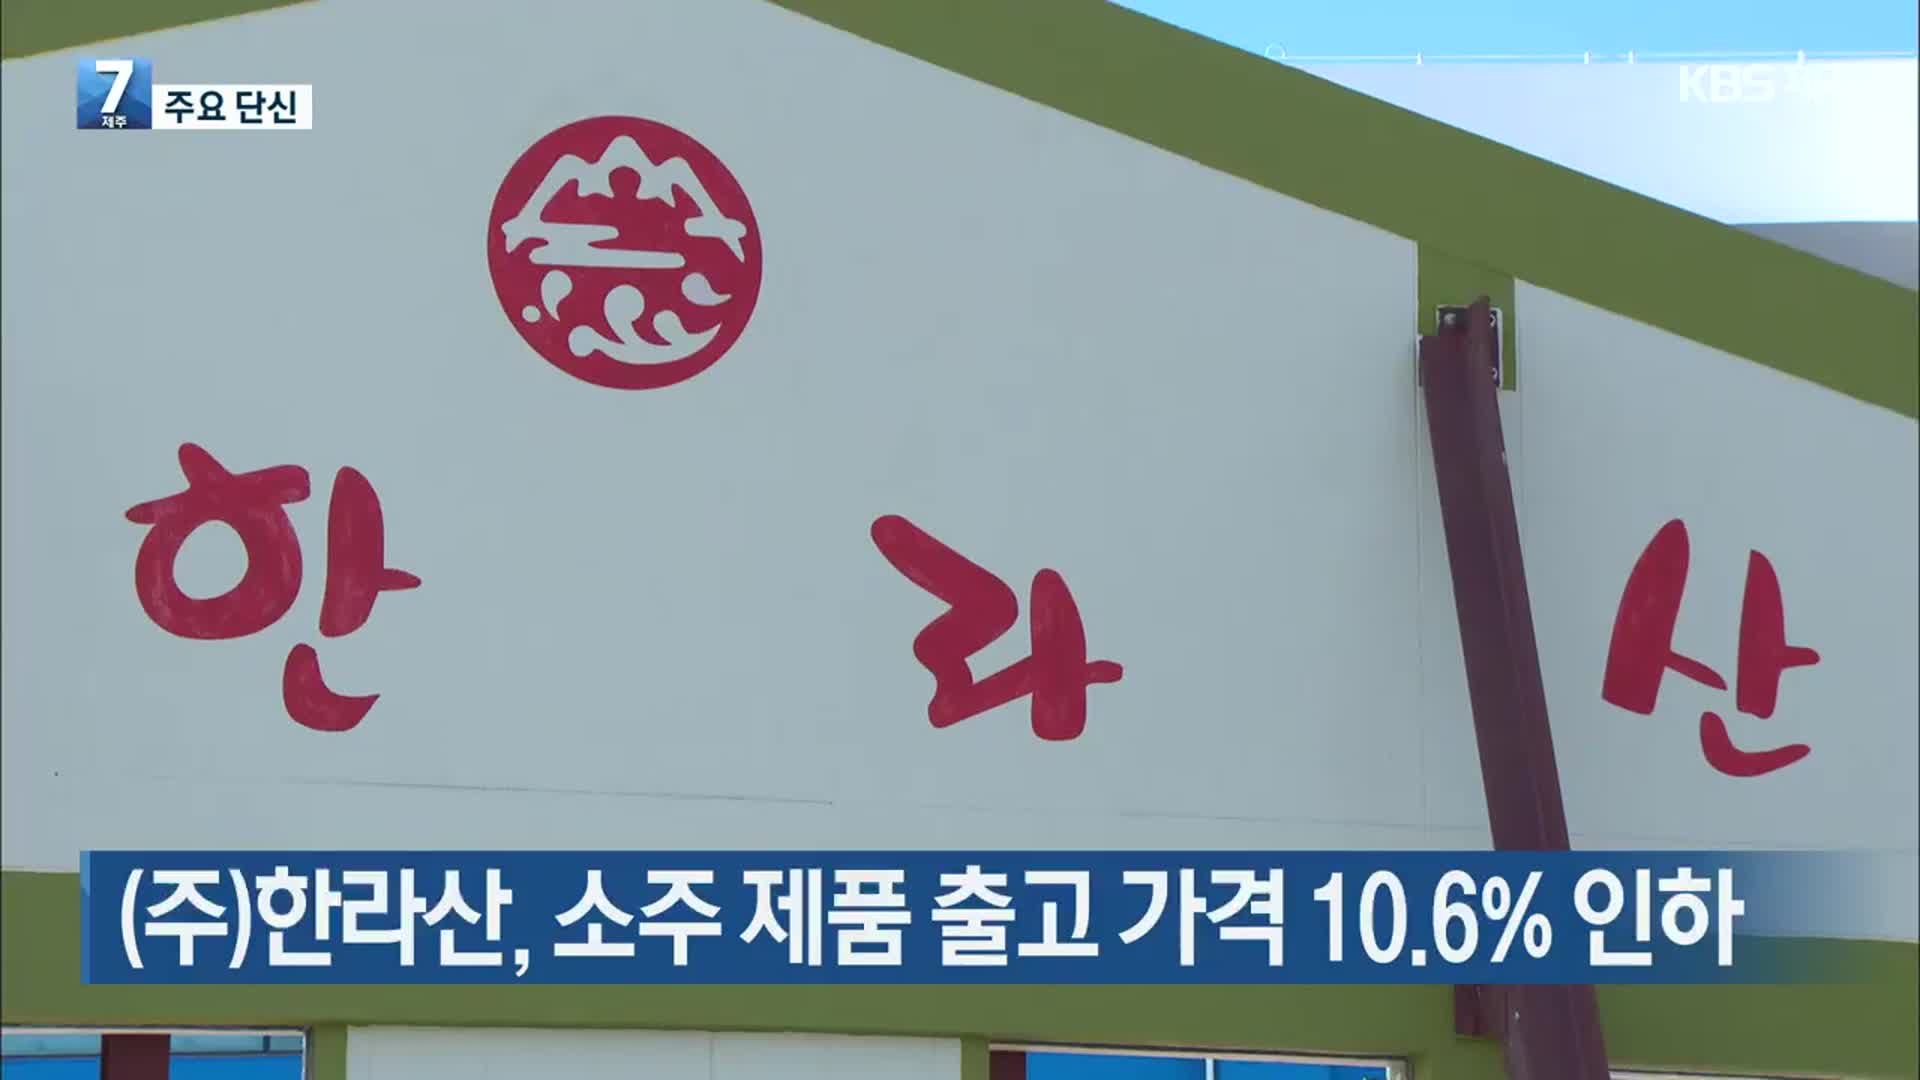 [주요 단신] (주)한라산, 소주 제품 출고 가격 10.6% 인하 외